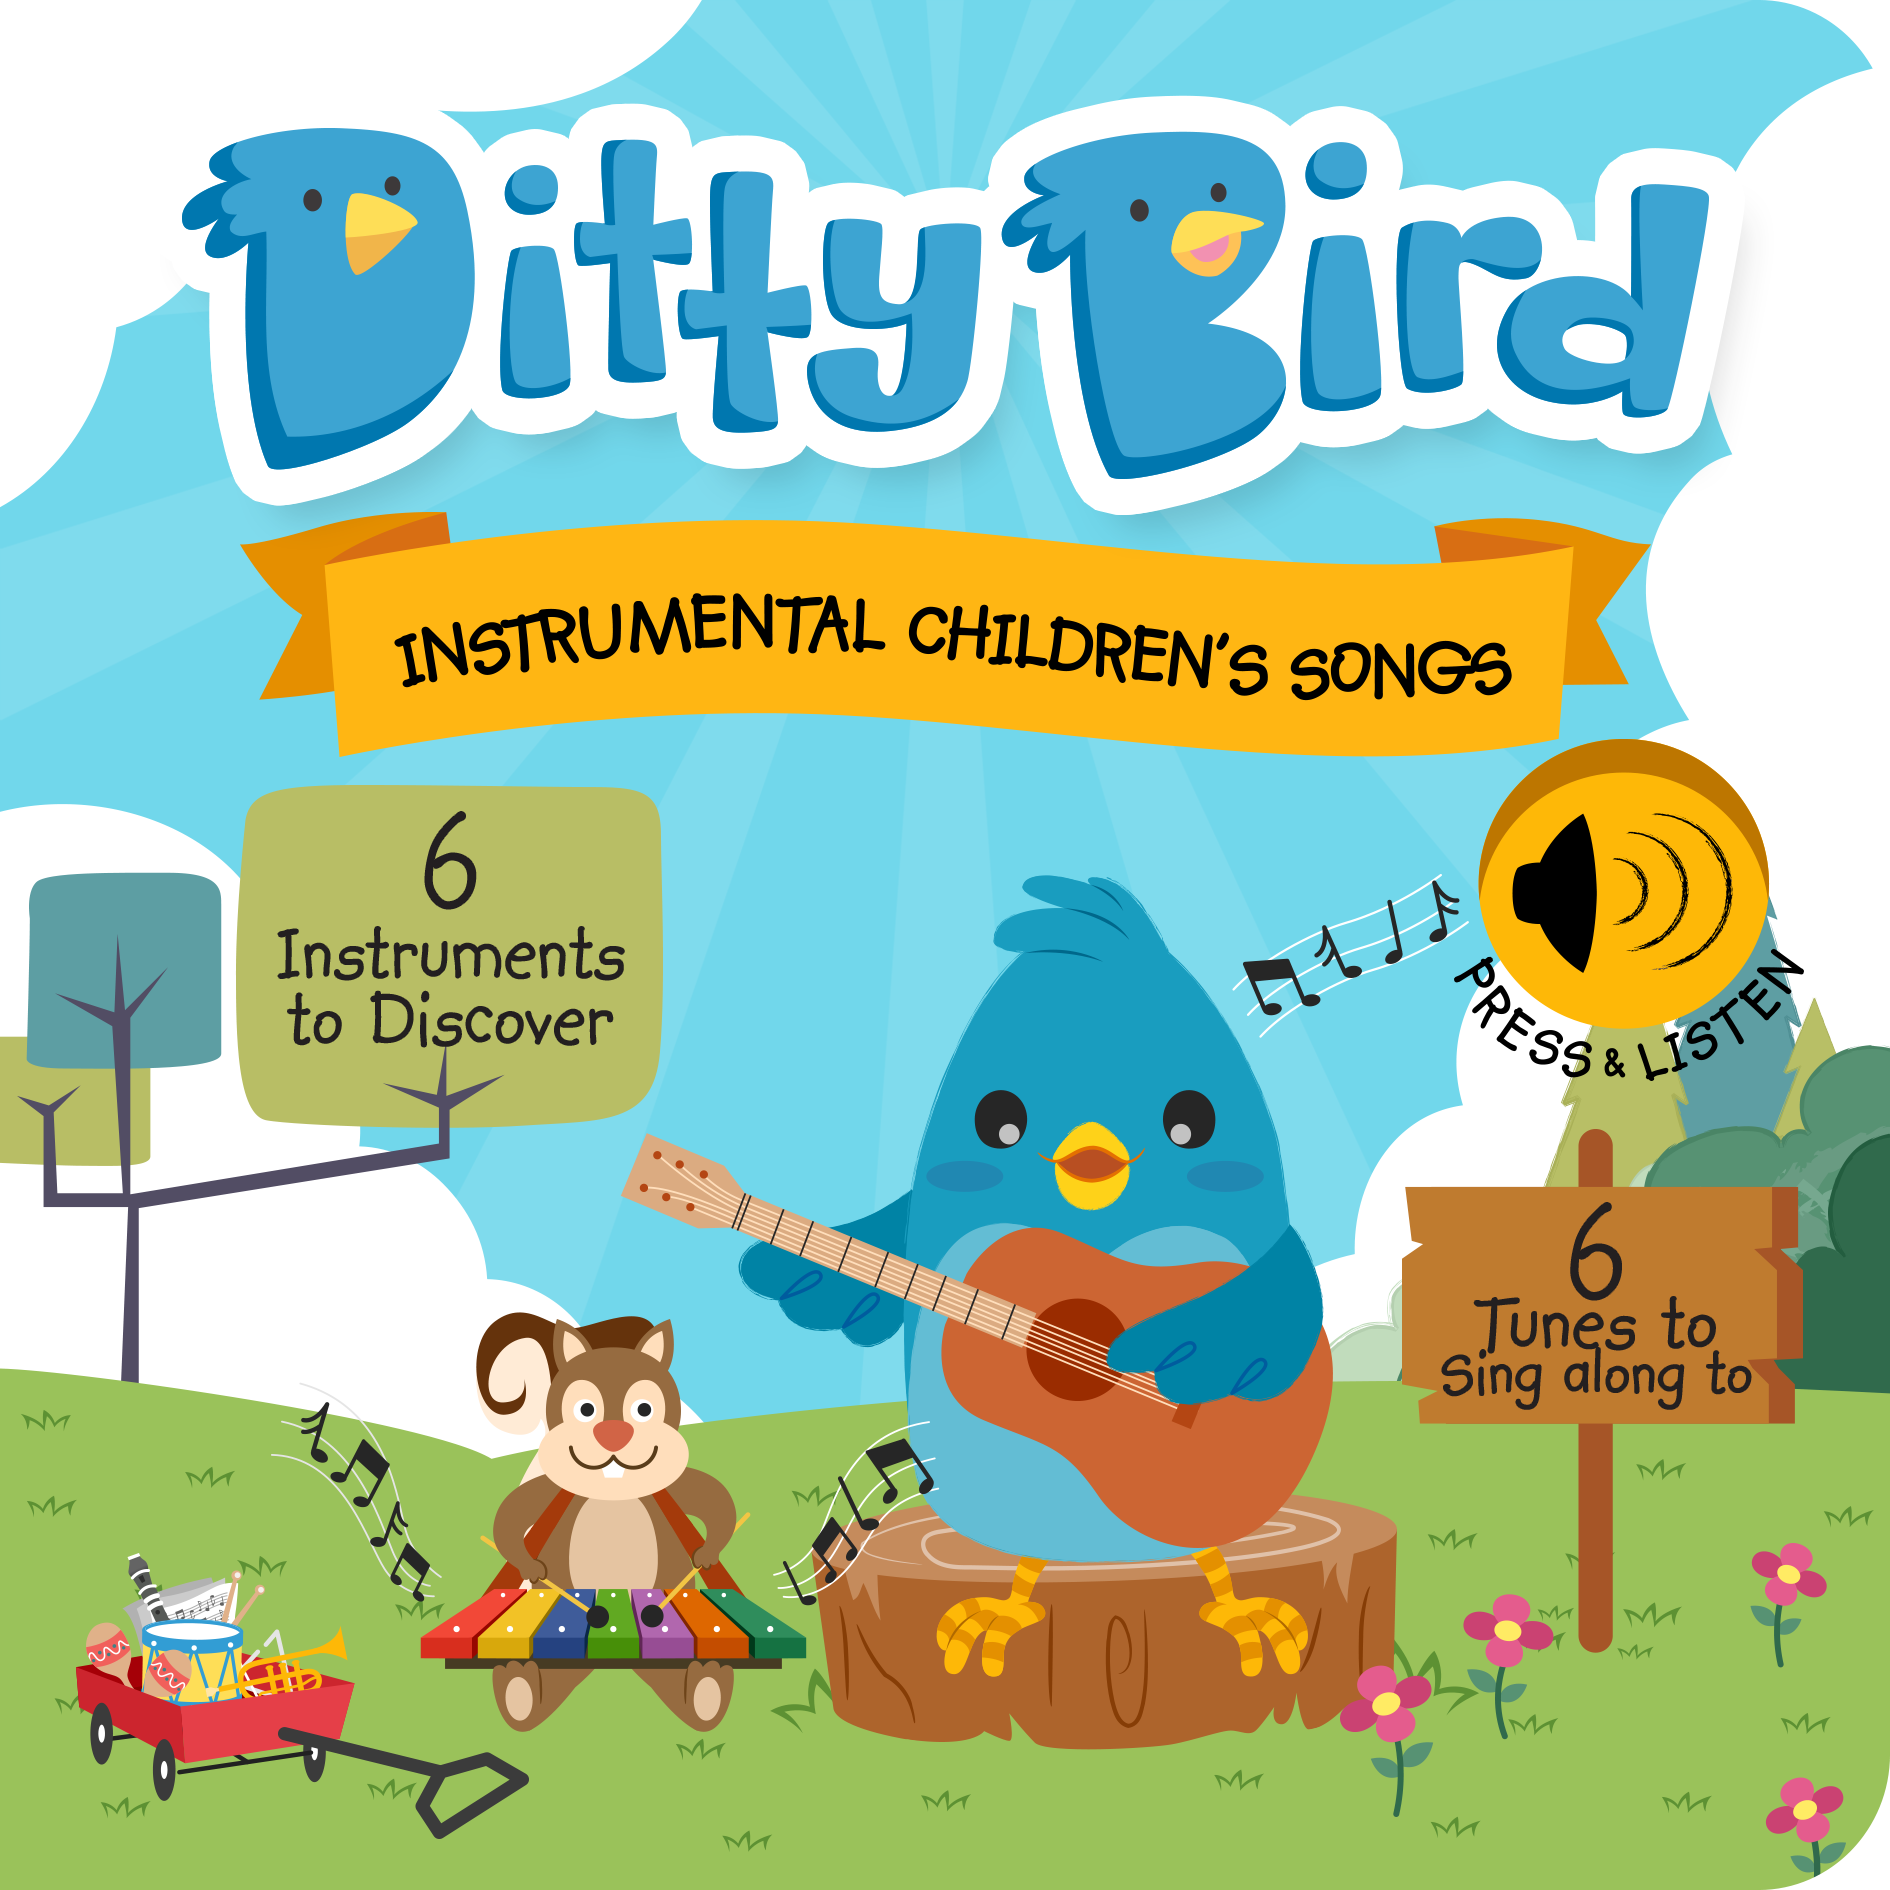 Ditty Bird - Instrumental Children's Songs